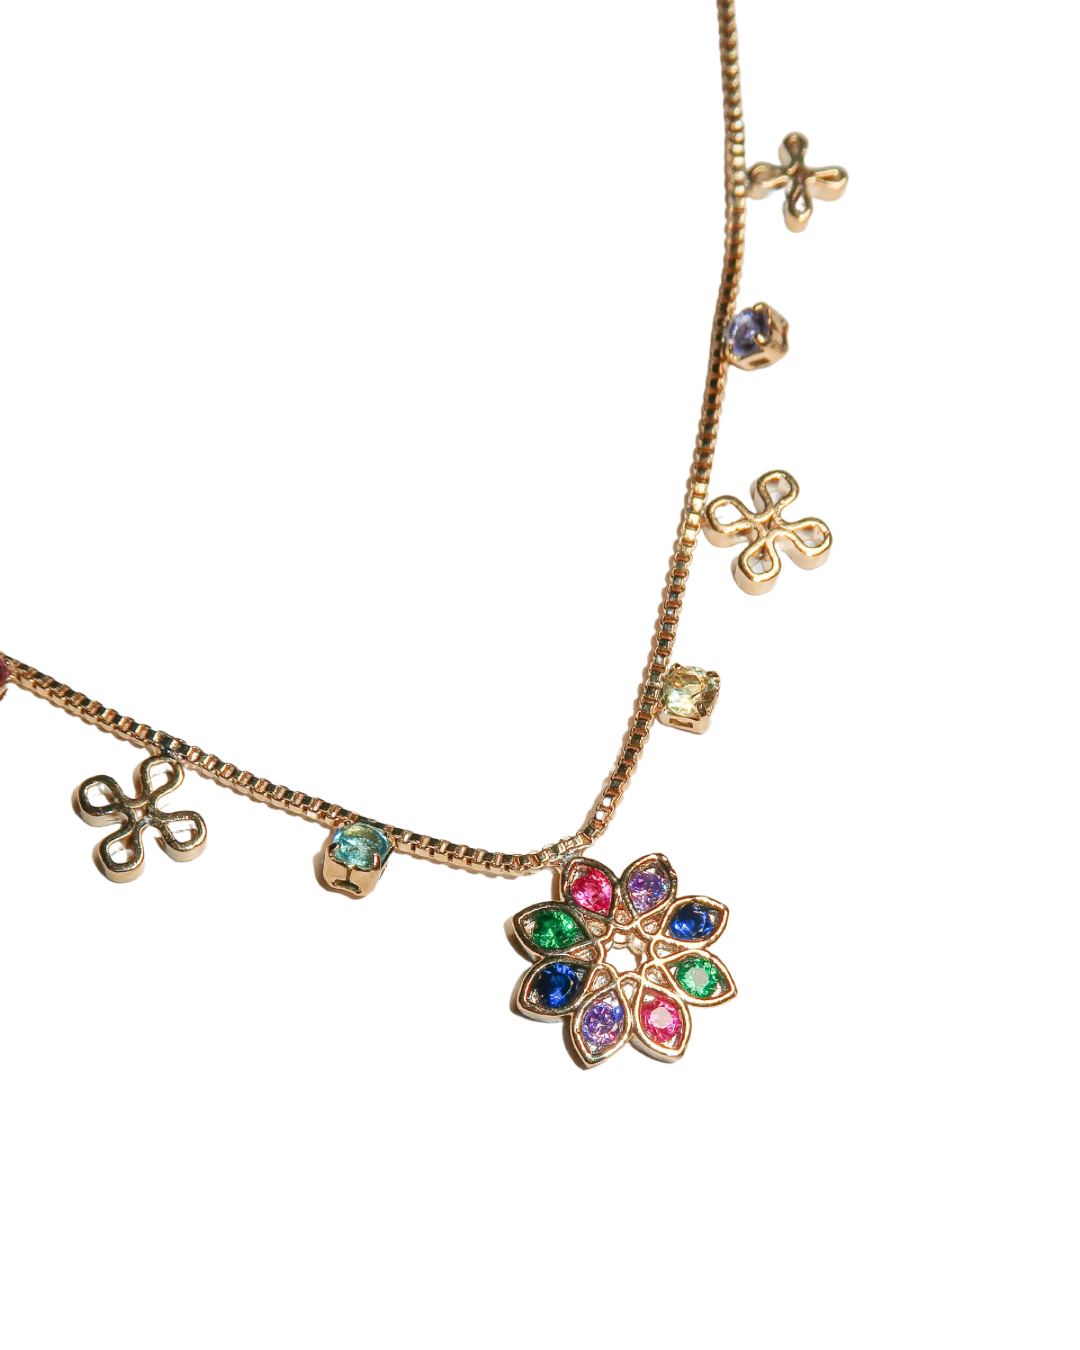 Daisy Dukes Necklace